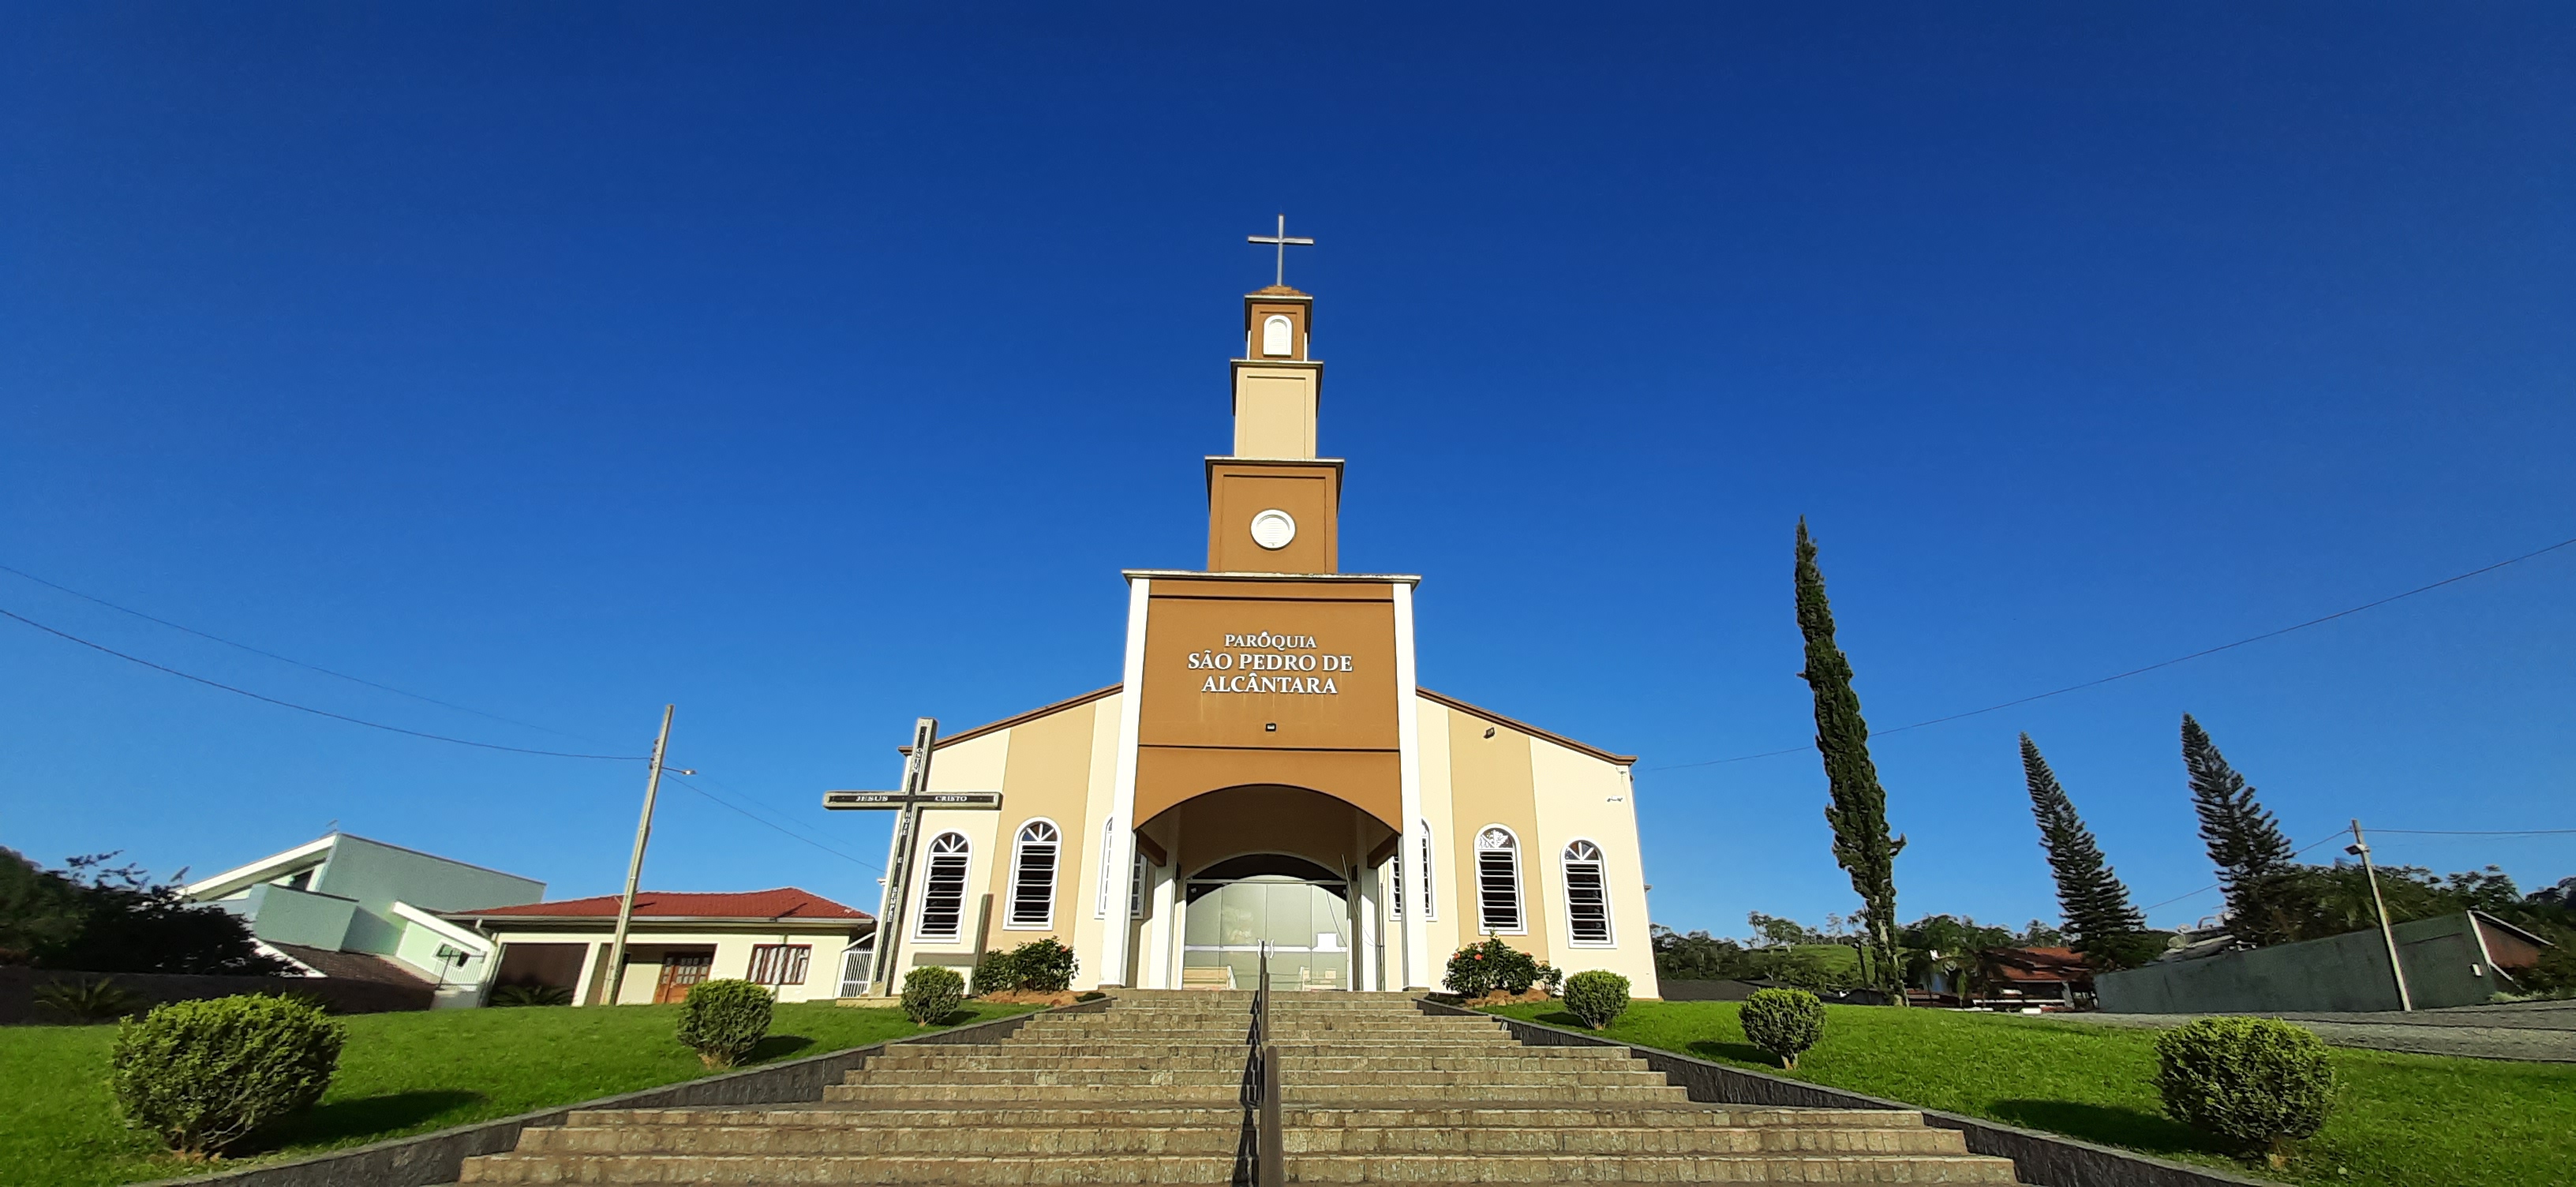 Paróquia São Pedro Alcântara | Guamiranga